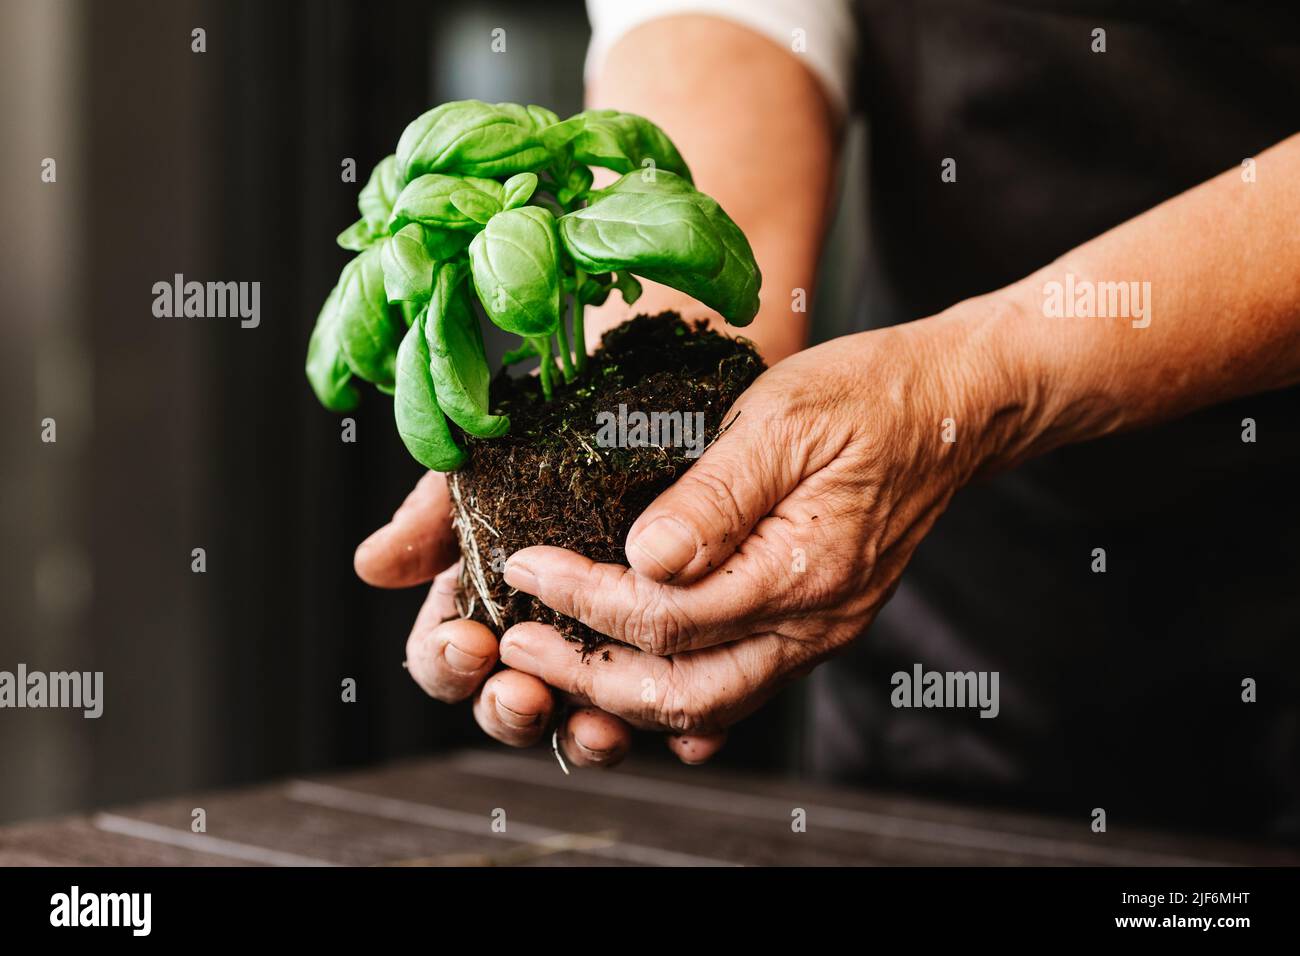 Cultivez un jardinier anonyme tenant une plante de basilic vert avec des feuilles dans un sol fertile avec des racines germées pendant la transplantation dans une pièce lumineuse Banque D'Images